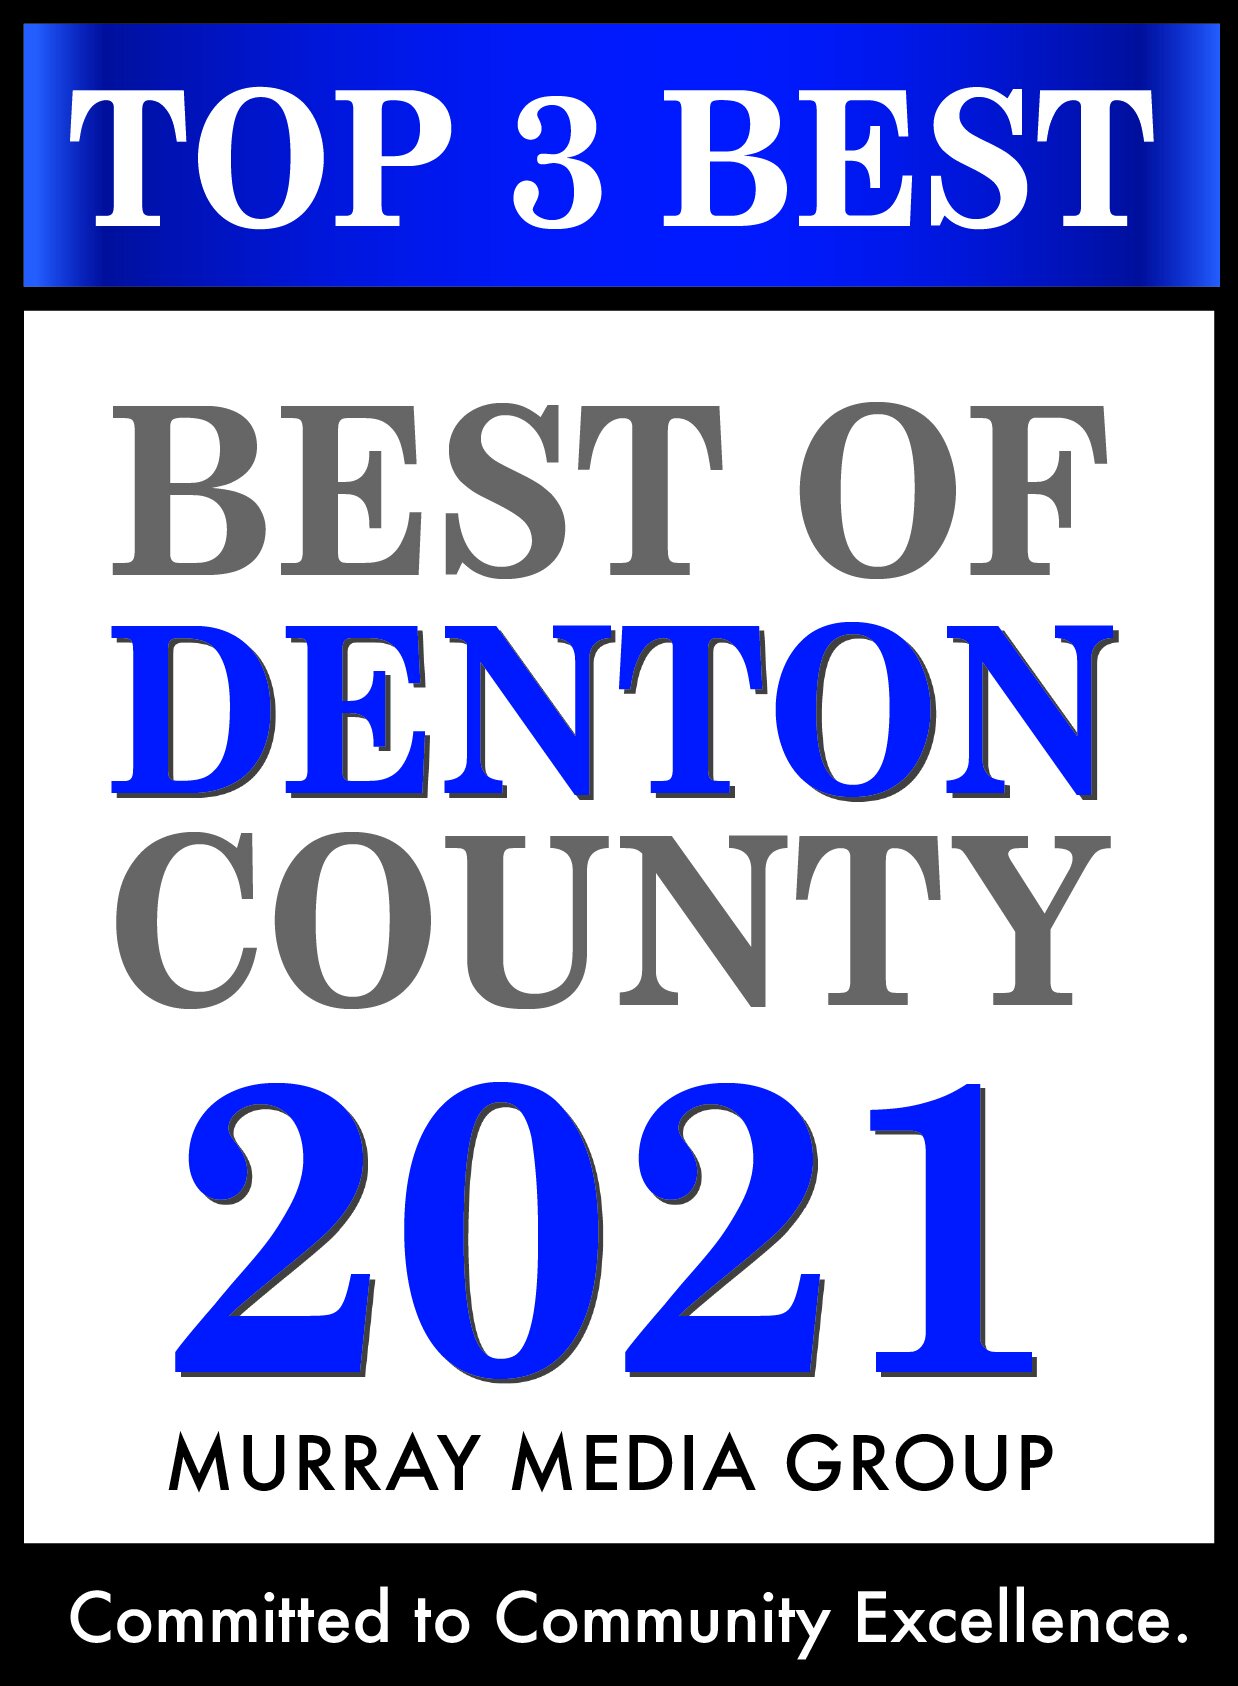 Top 3 Best of Denton County